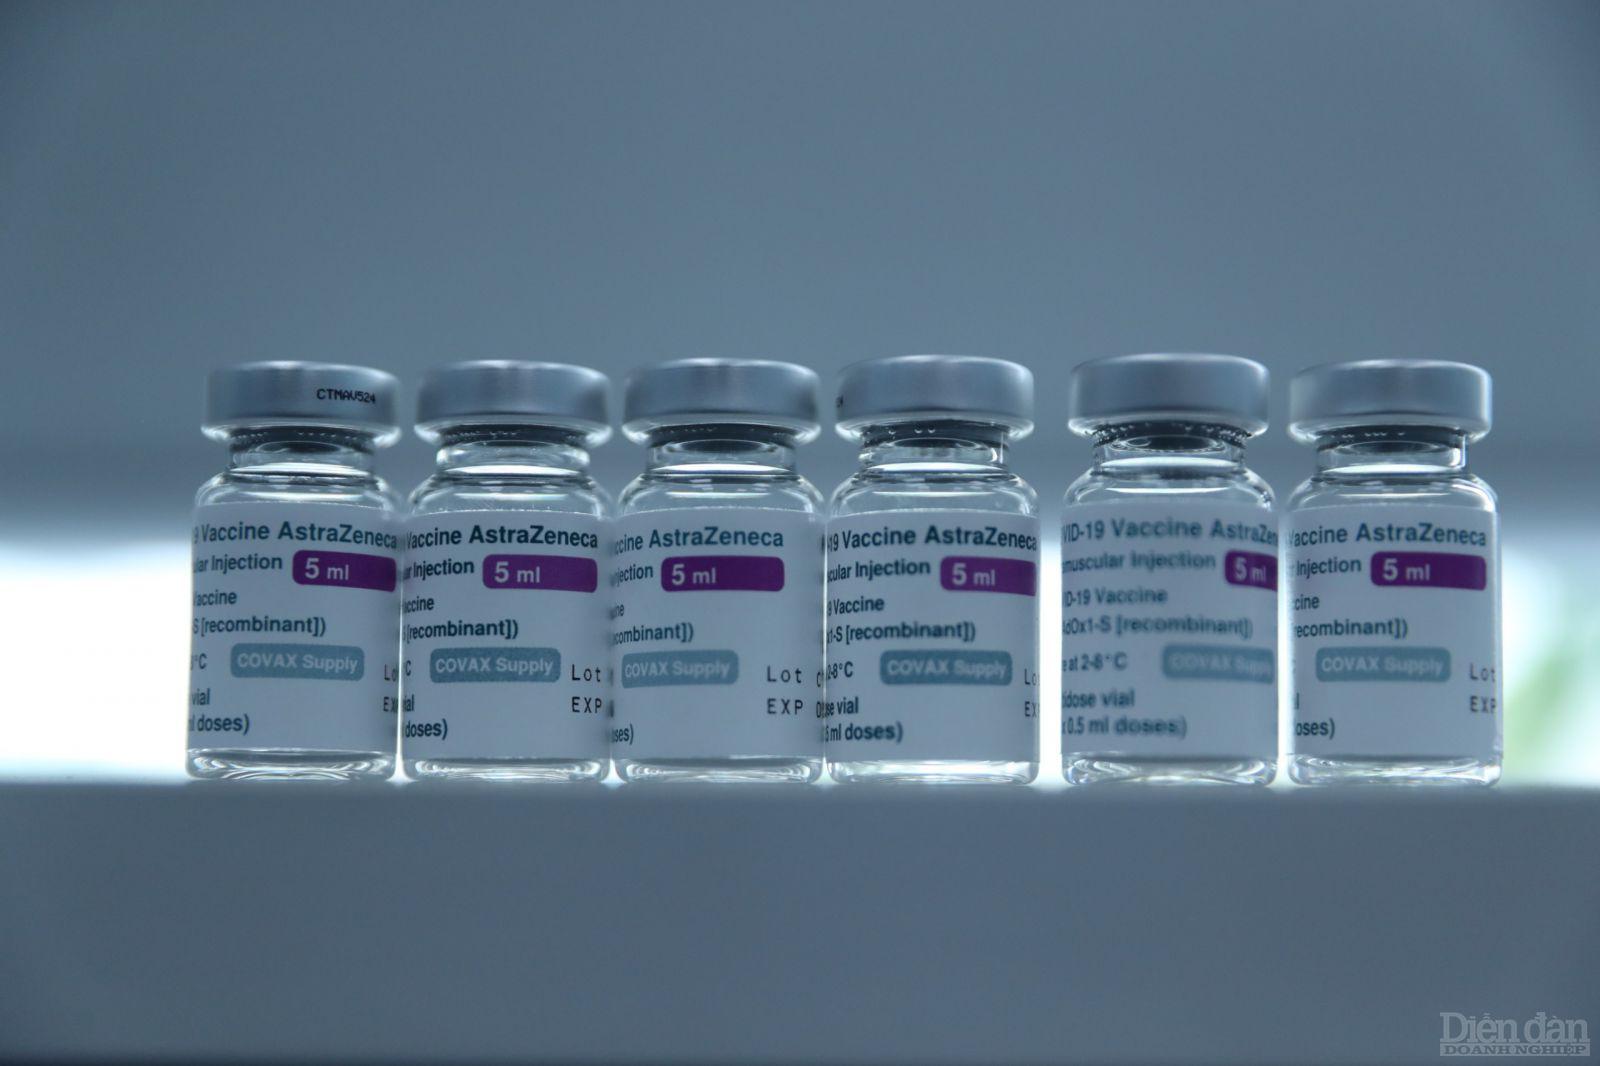 AstraZeneca là vaccine Covid-19 đầu tiên được sử dụng trong Chương trình tiêm chủng mở rộng quốc gia phòng chống Covid-19 tại Việt Nam. Tính đến ngày 15/6, Việt Nam đã tiêm vaccine cho trên 1,55 triệu người với gần 60.000 người đã tiêm đủ hai mũi.